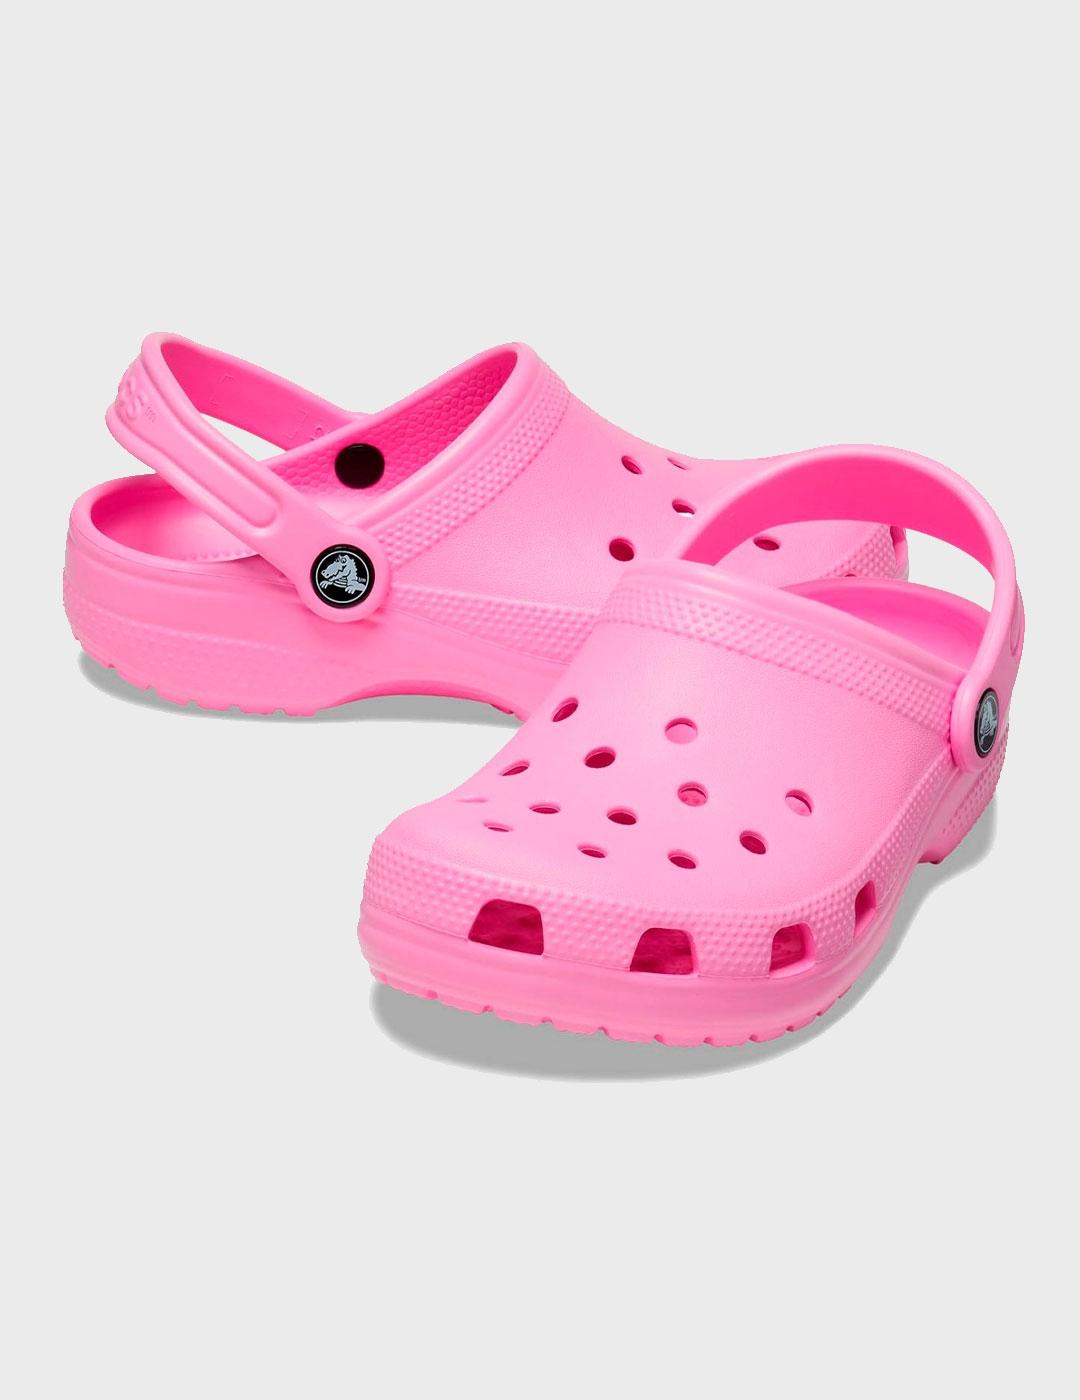 Zuecos Crocs Classic Clog rosa para mujer y niño